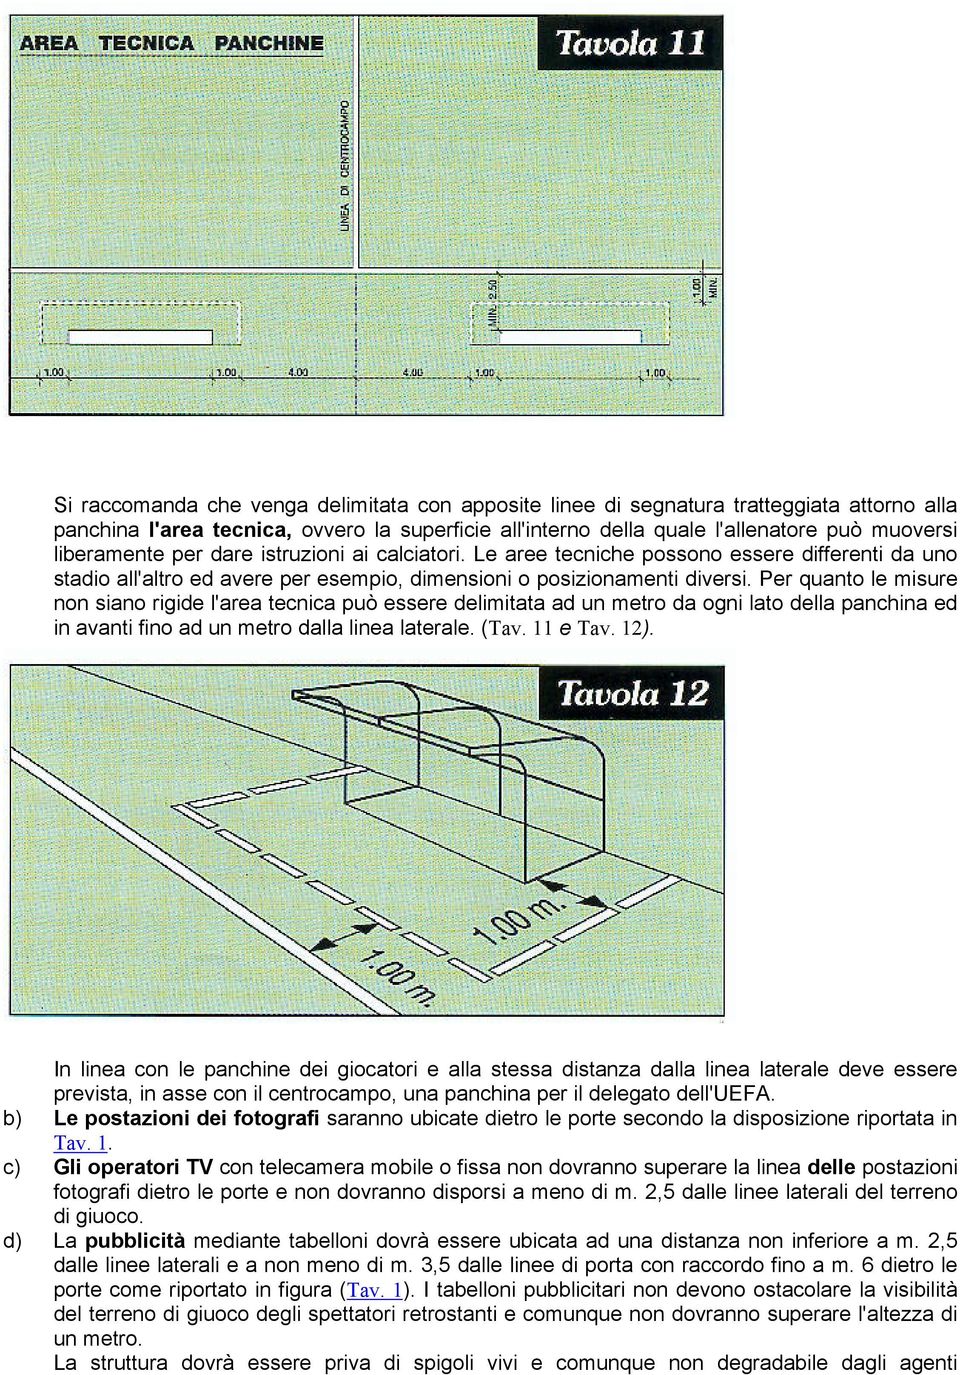 Per quanto le misure non siano rigide l'area tecnica può essere delimitata ad un metro da ogni lato della panchina ed in avanti fino ad un metro dalla linea laterale. (Tav. 11 e Tav. 12).